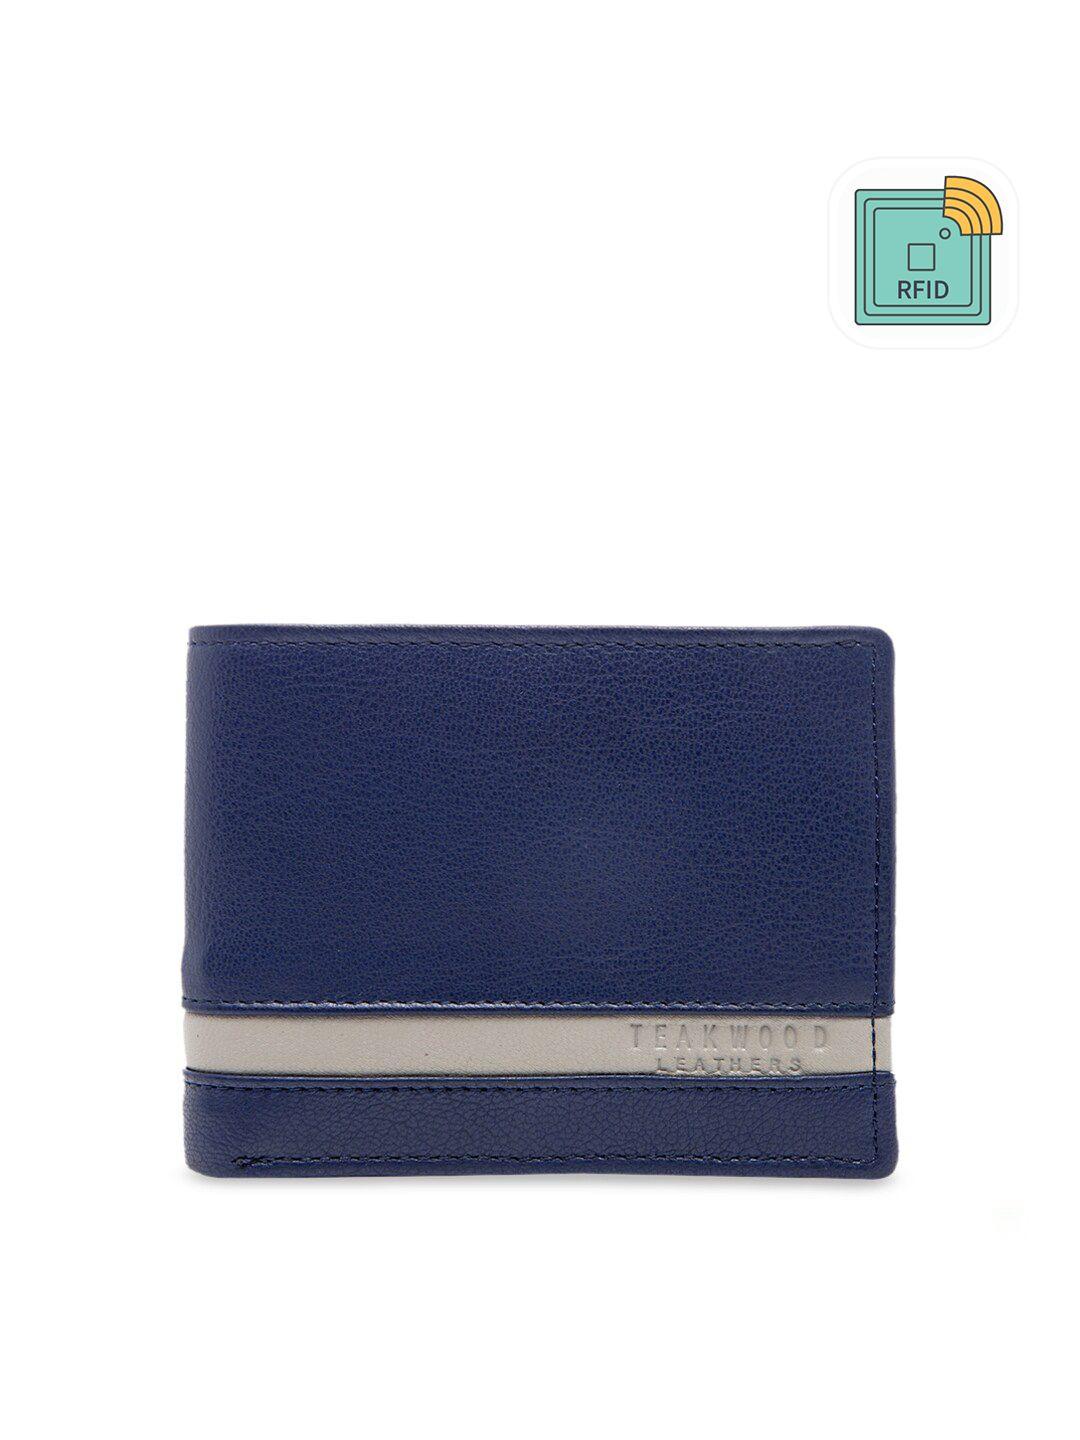 teakwood-leathers-men-blue-solid-two-fold-wallet